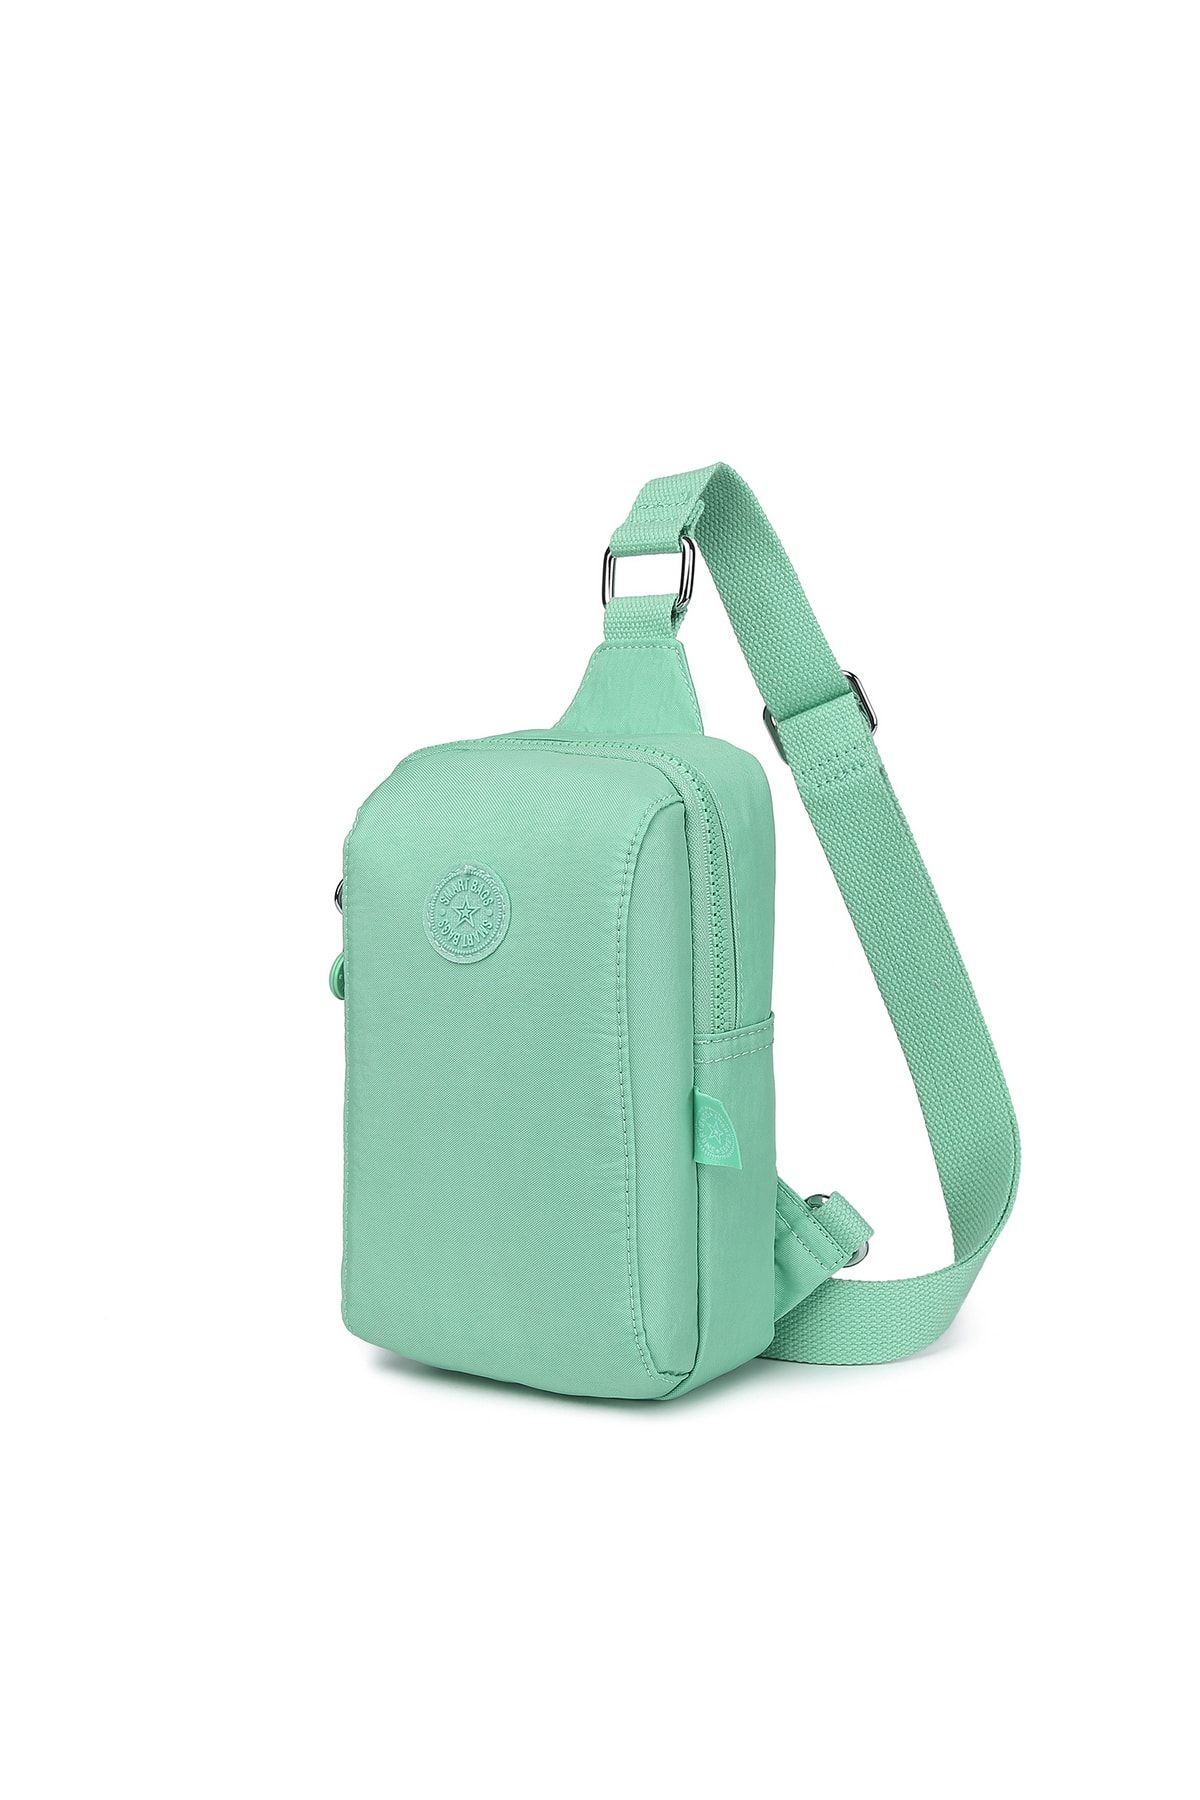 Smart Bags Bodybag Unisex Postacı Çantası Krinkıl Kumaş 3105 A.yeşil